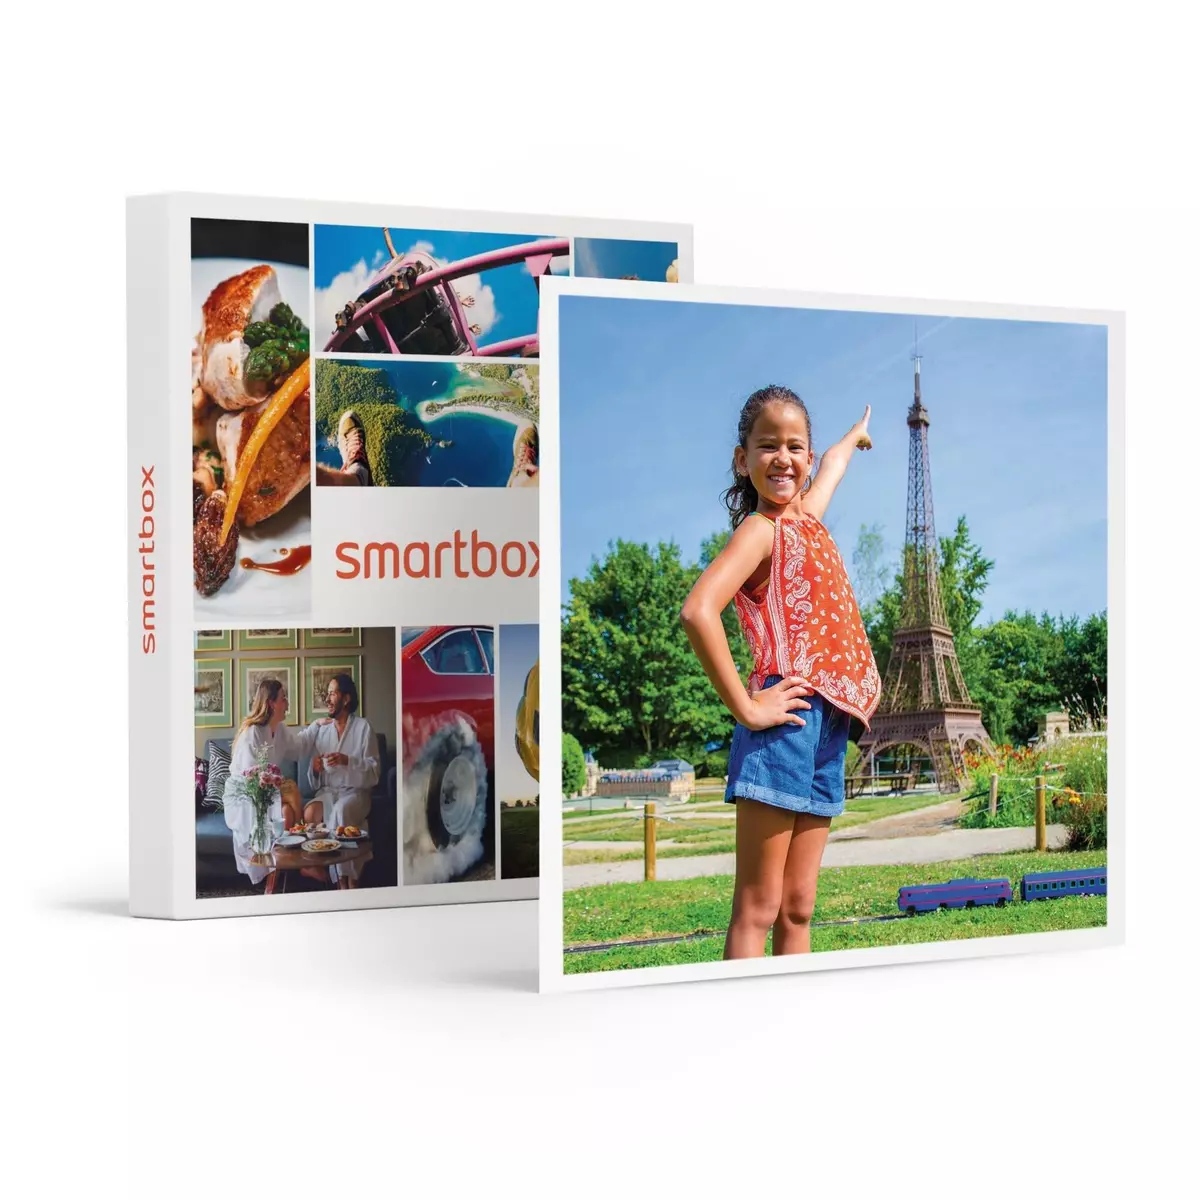 Smartbox Aventure et découverte en famille : entrée au parc France Miniature pour 1 adulte et 2 enfants - Coffret Cadeau Multi-thèmes